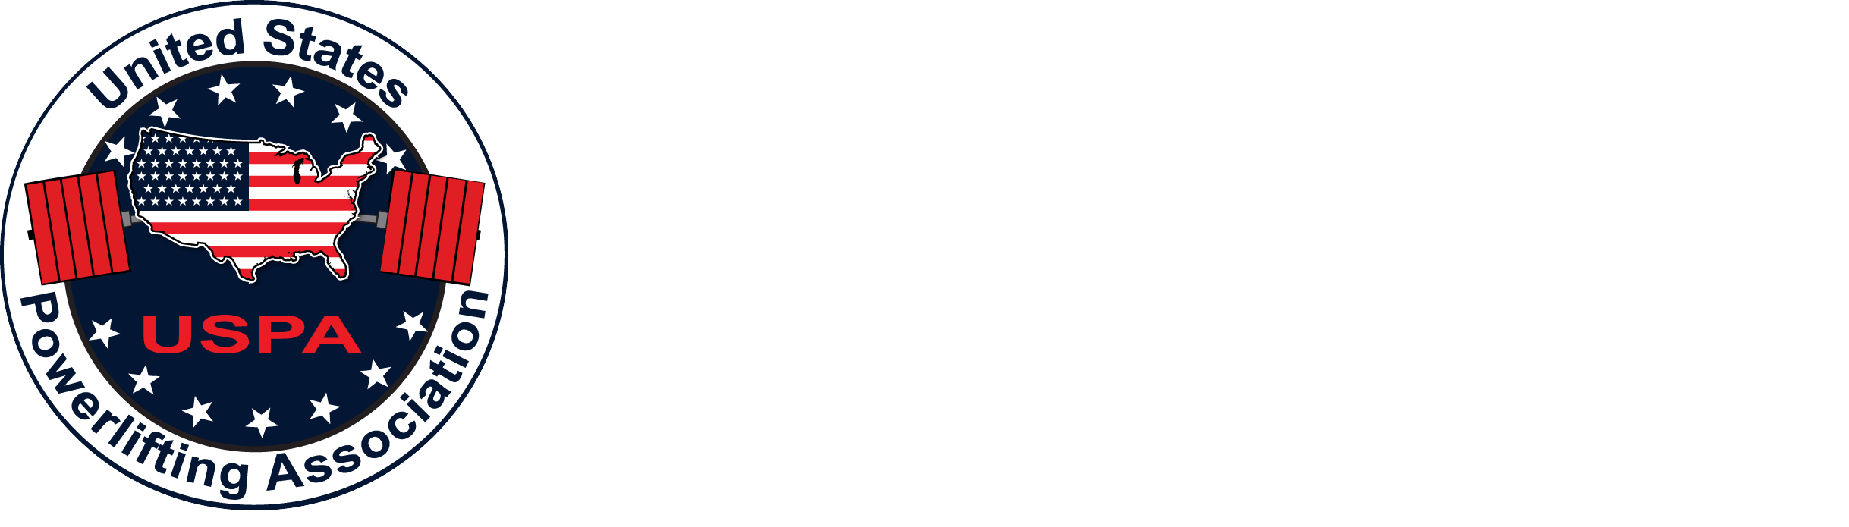 USPA Logo - USPA Powerlifting